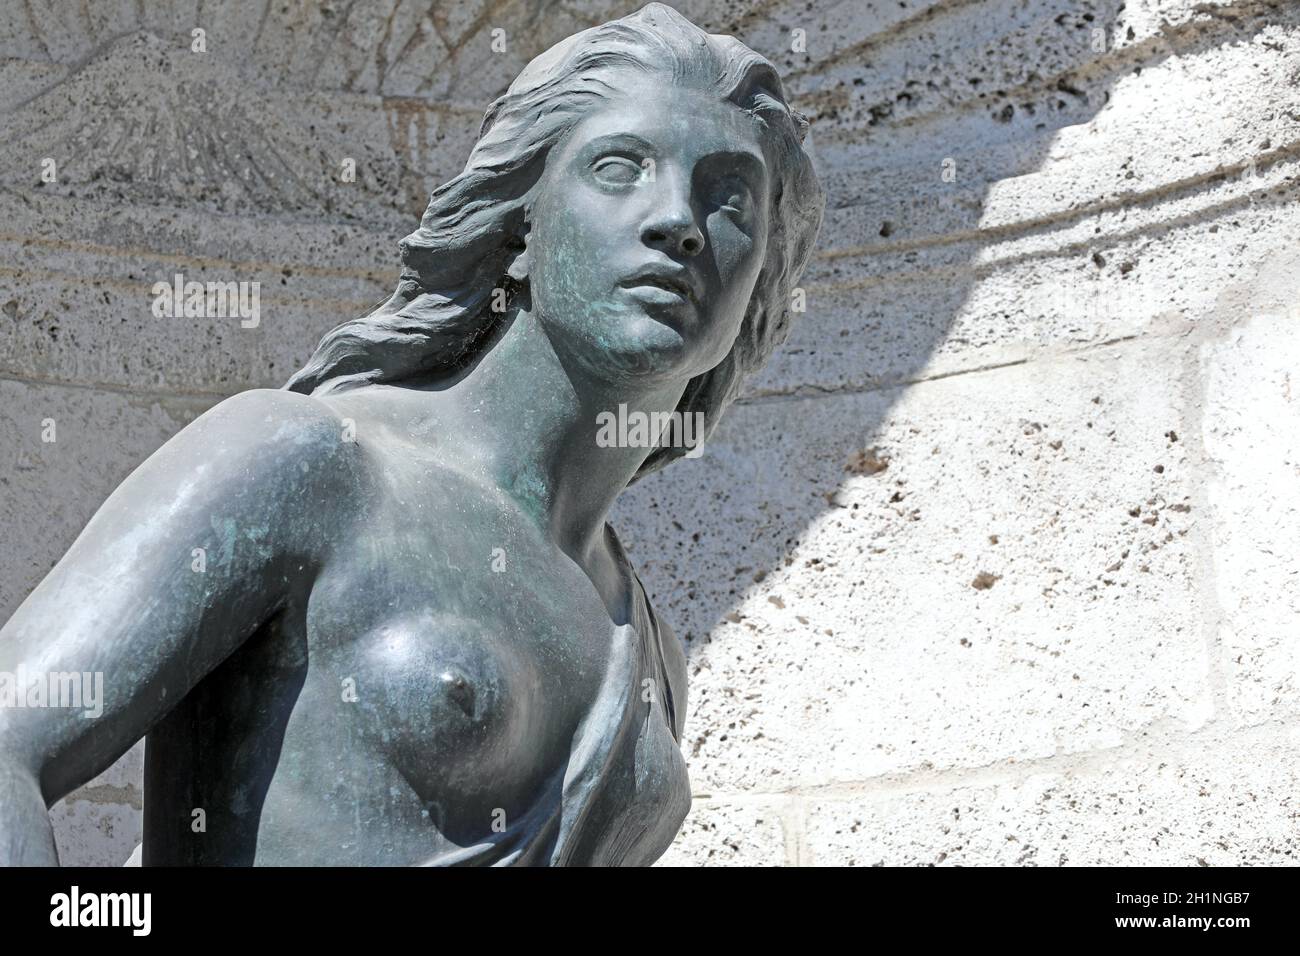 Detailaufnahme. Die weibliche Figur stellt die 'Junge Jägerin' am Hubertusbrunnen in München-Neuhausen-Nymphenburg dar. Entwurf Adolf von Hildebrand 1 Foto de stock